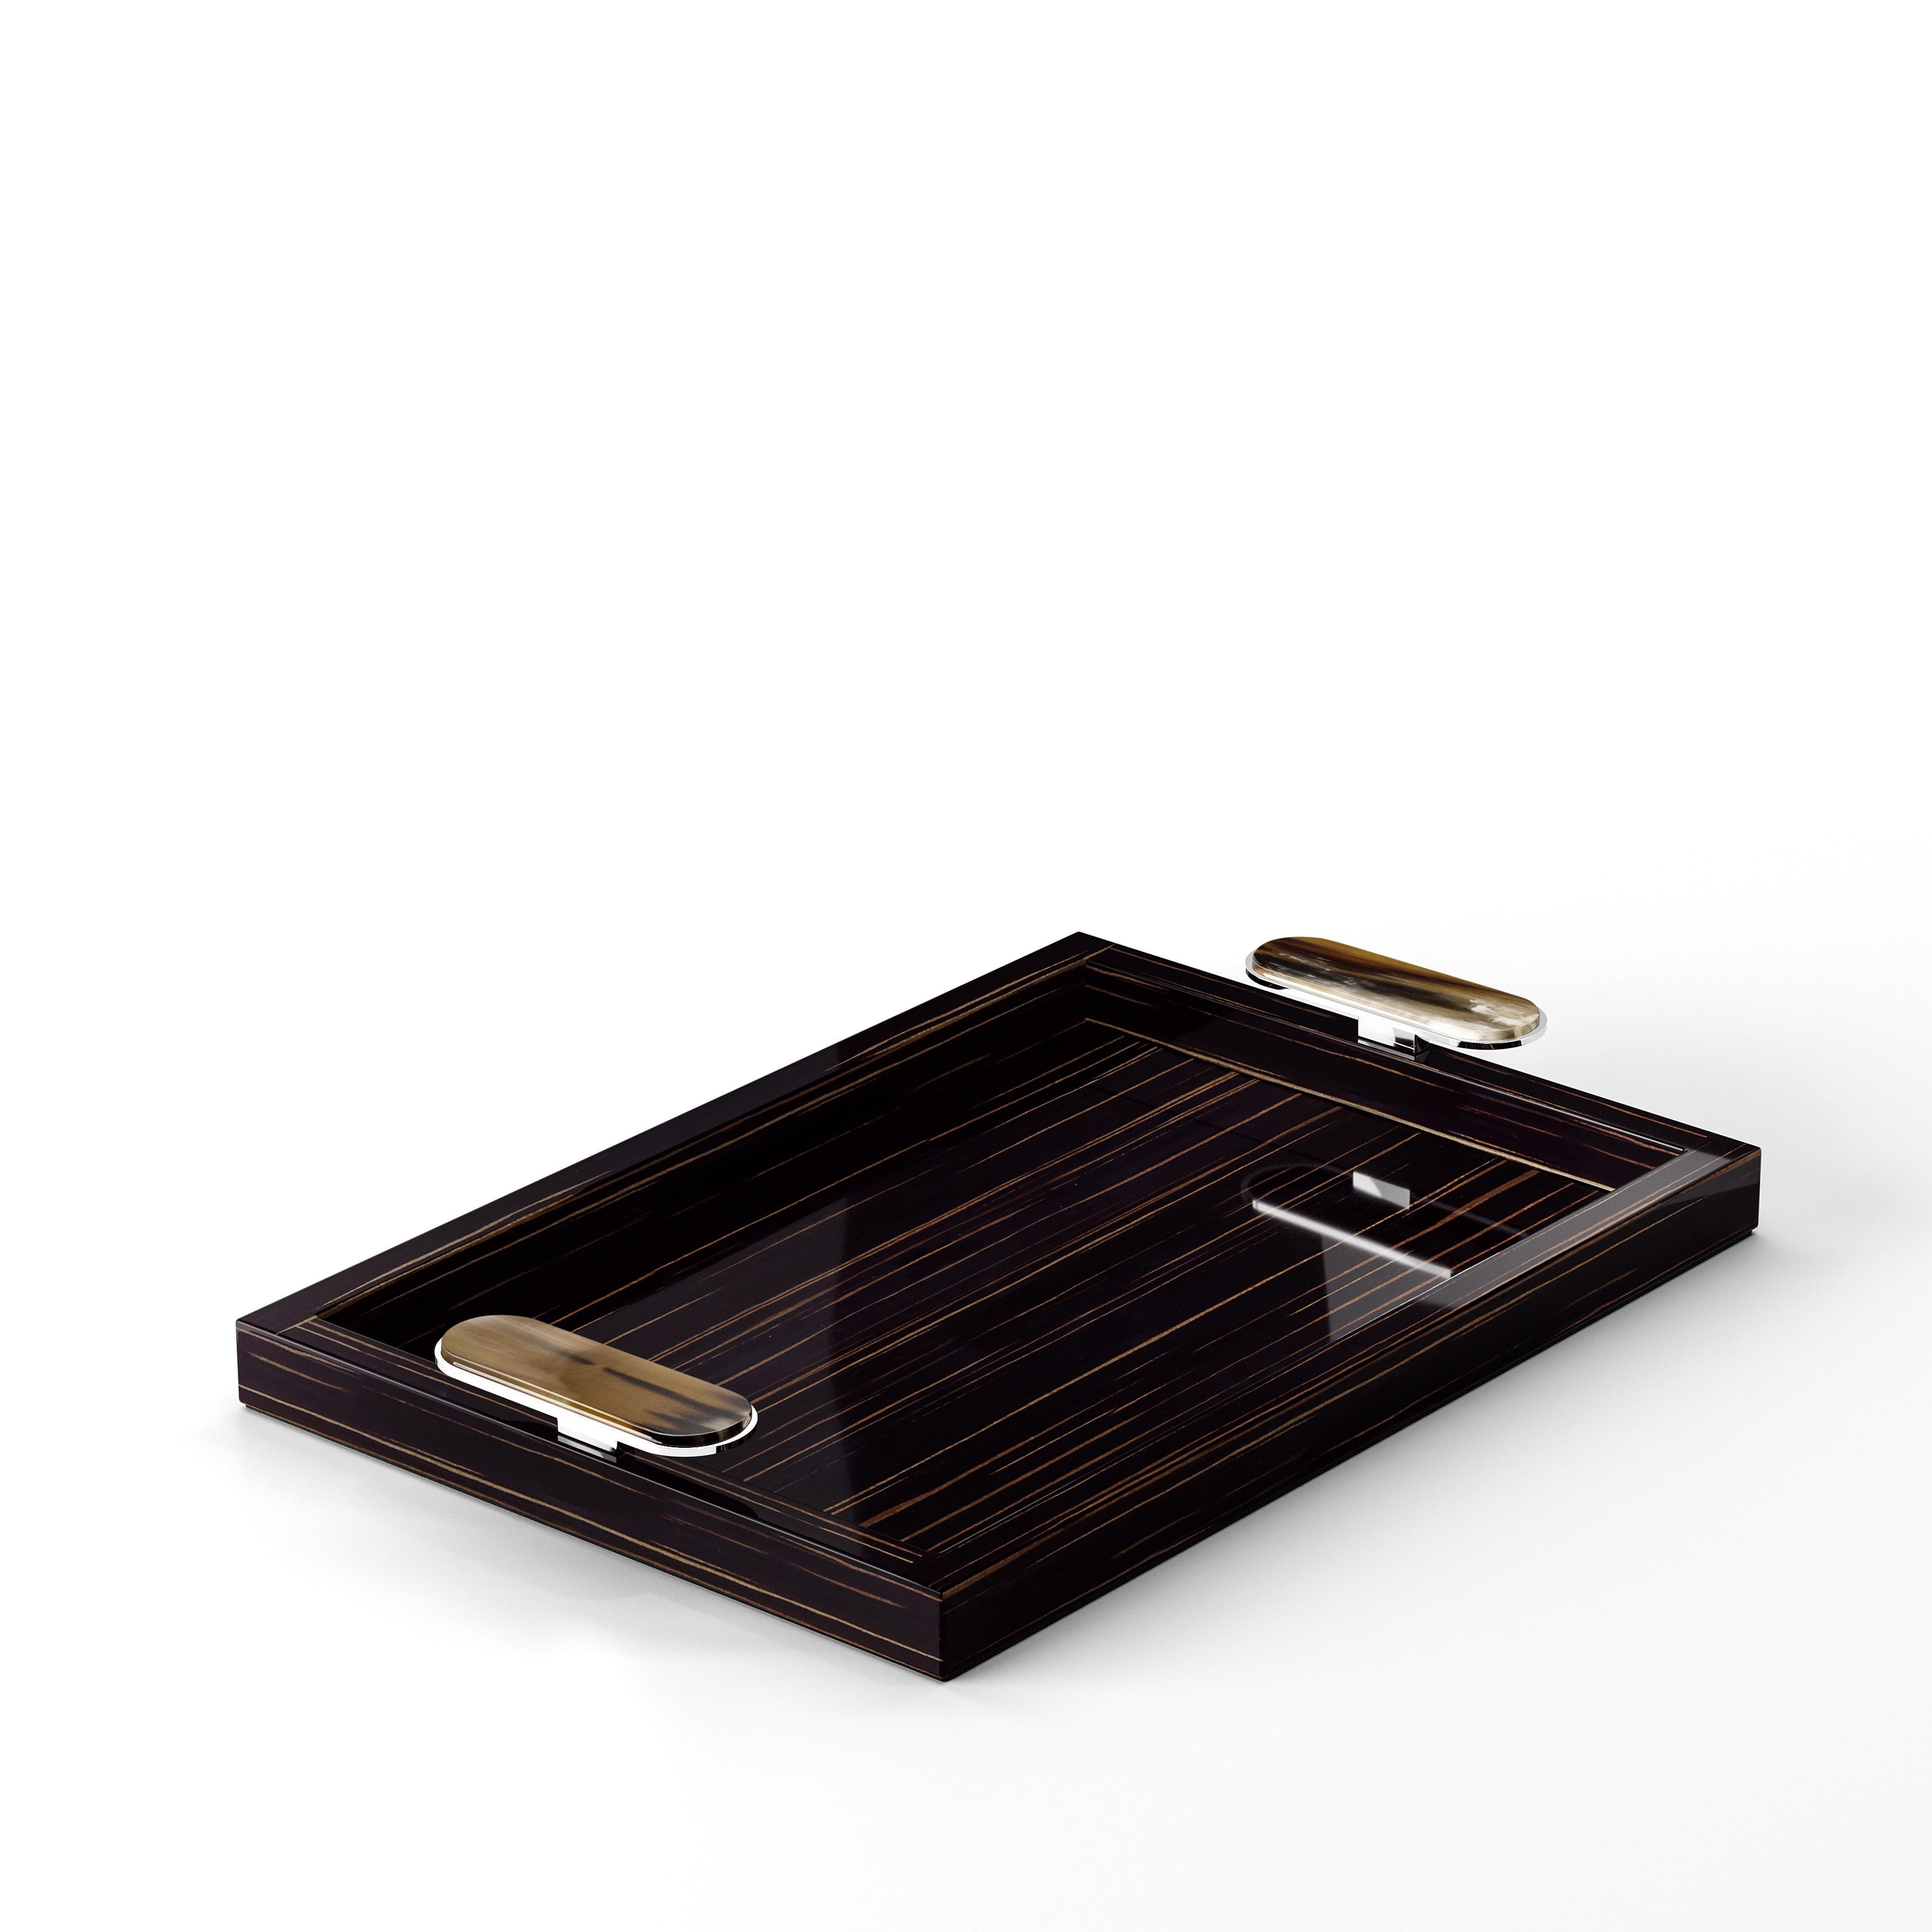 Contemporary Berro Tray in Glossy Black Lacquered Wood and Corno Italiano, Mod. 2417 For Sale